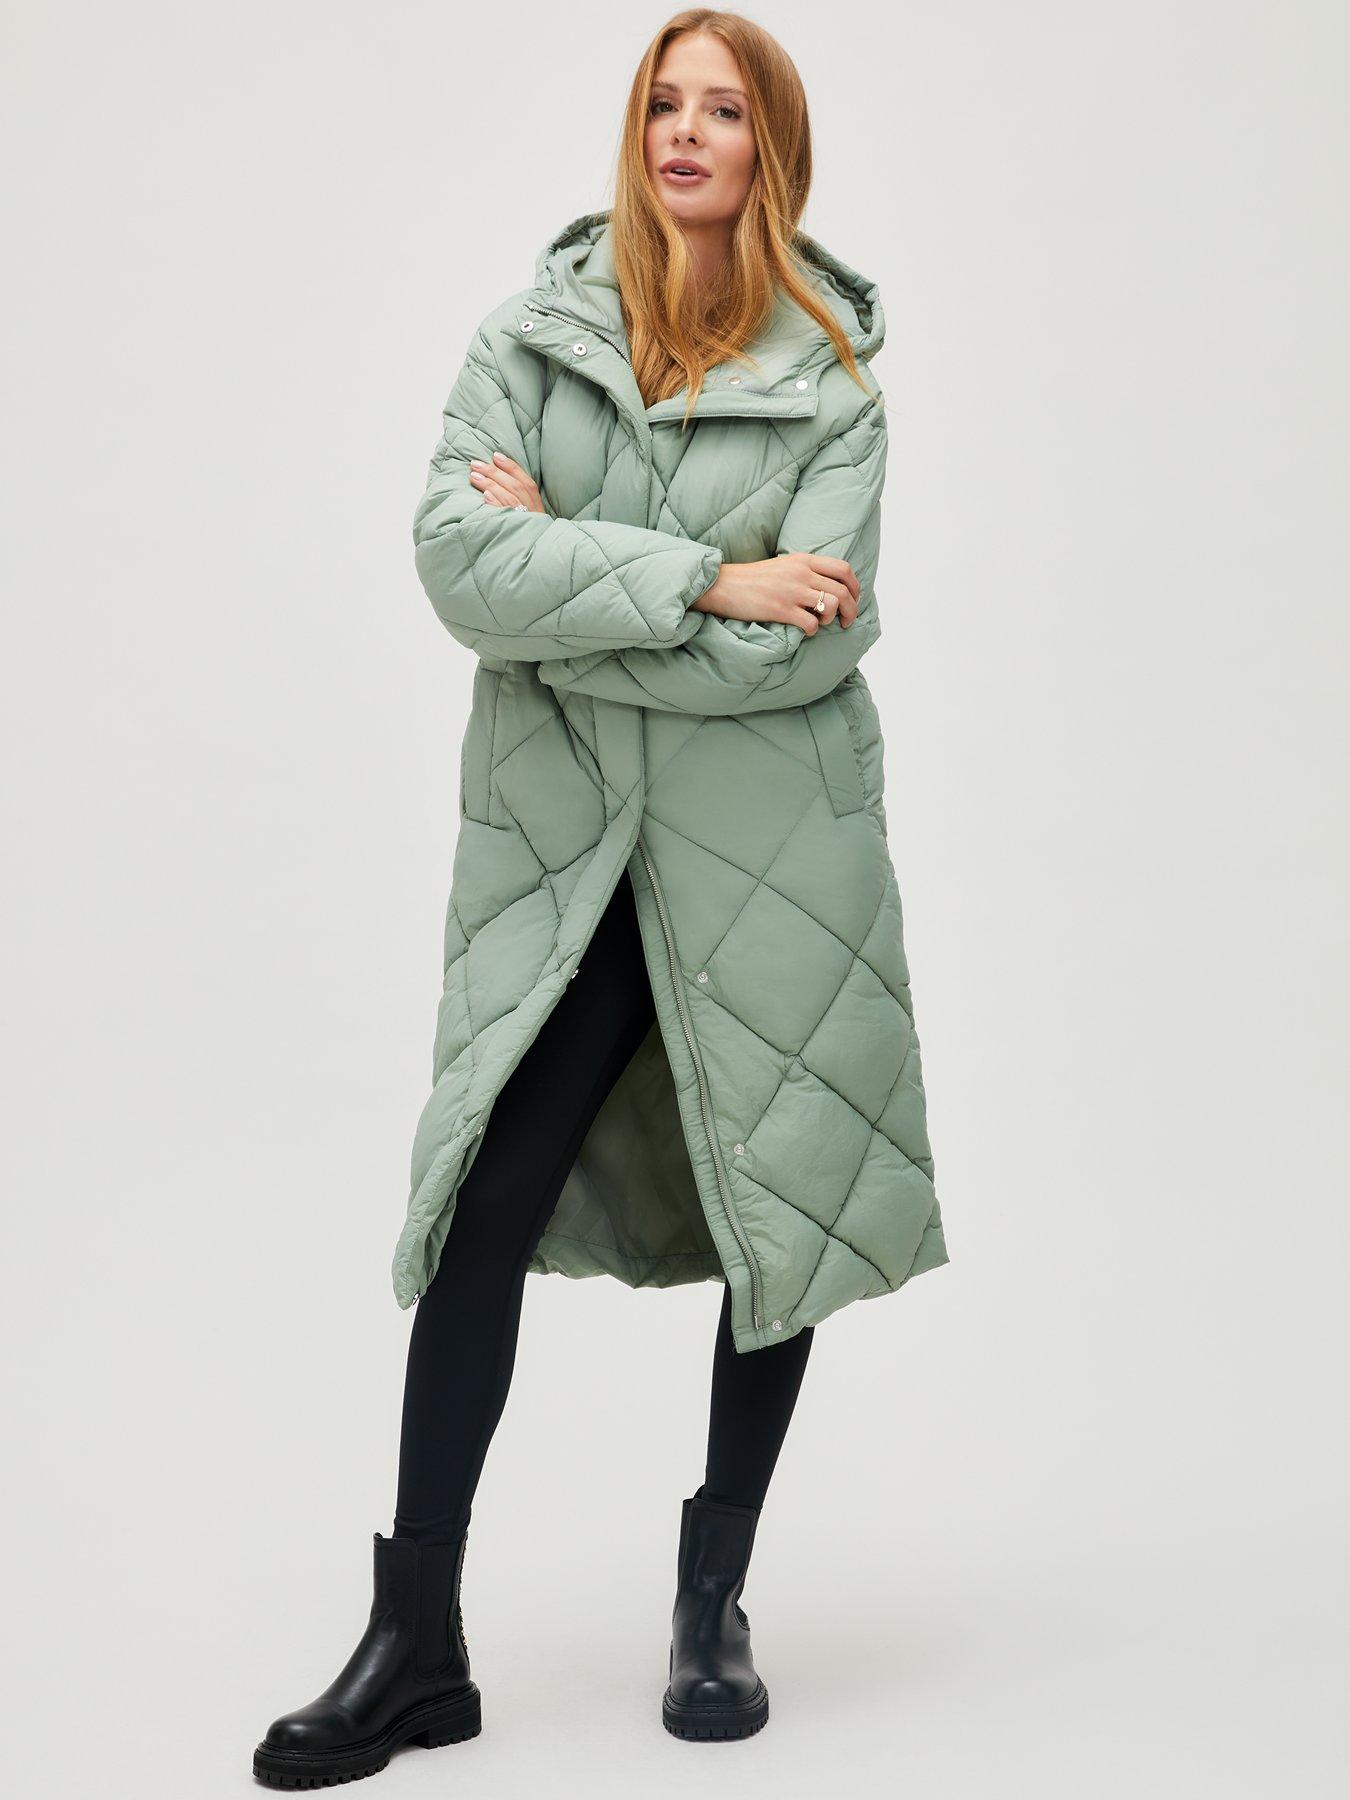 Dinou Long coat Multicolored 40                  EU discount 97% WOMEN FASHION Coats Long coat Embroidery 